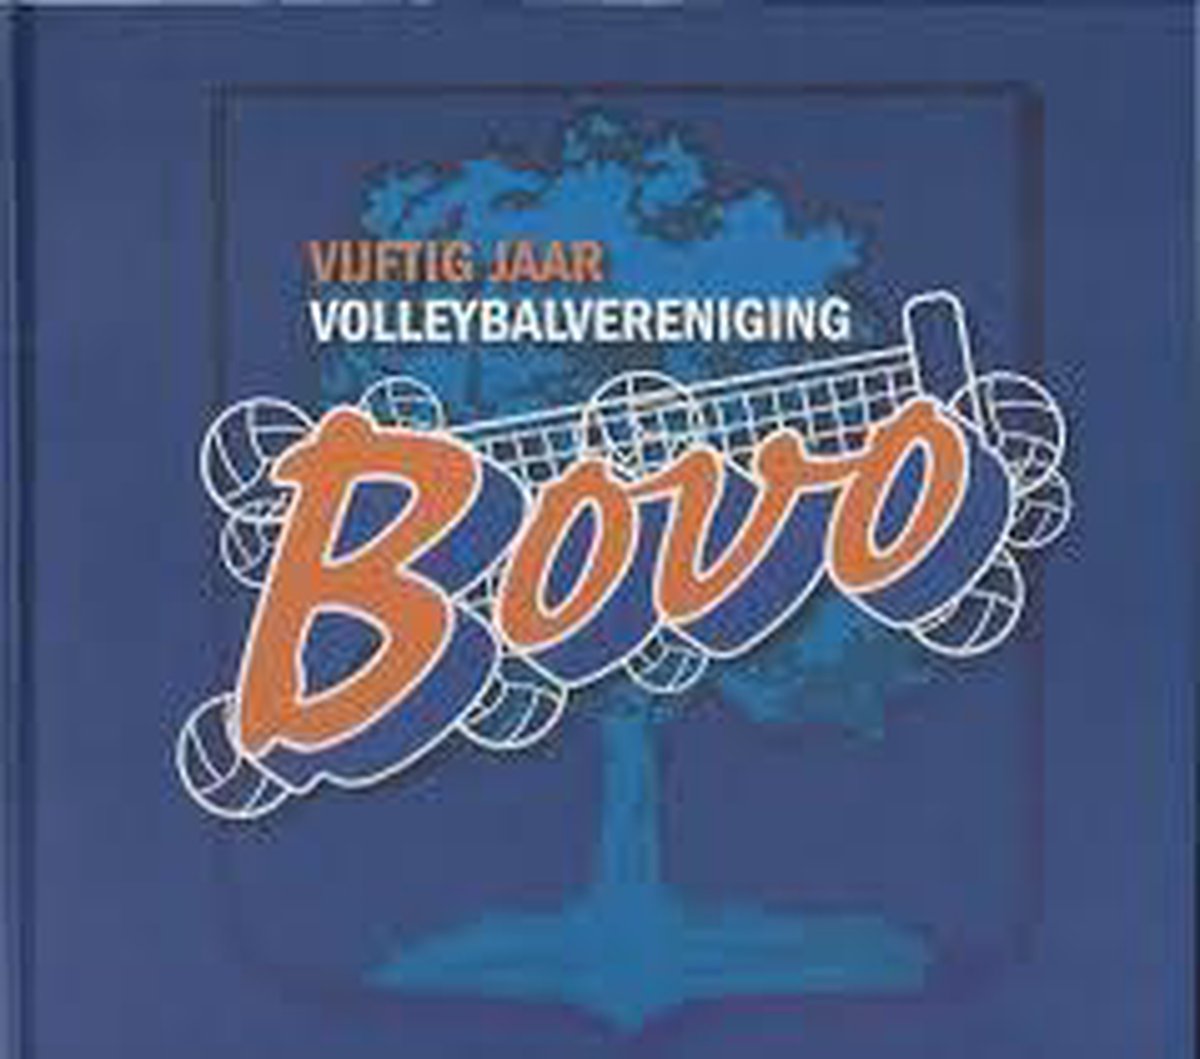 Vijftig jaar volleybalvereniging BOVO